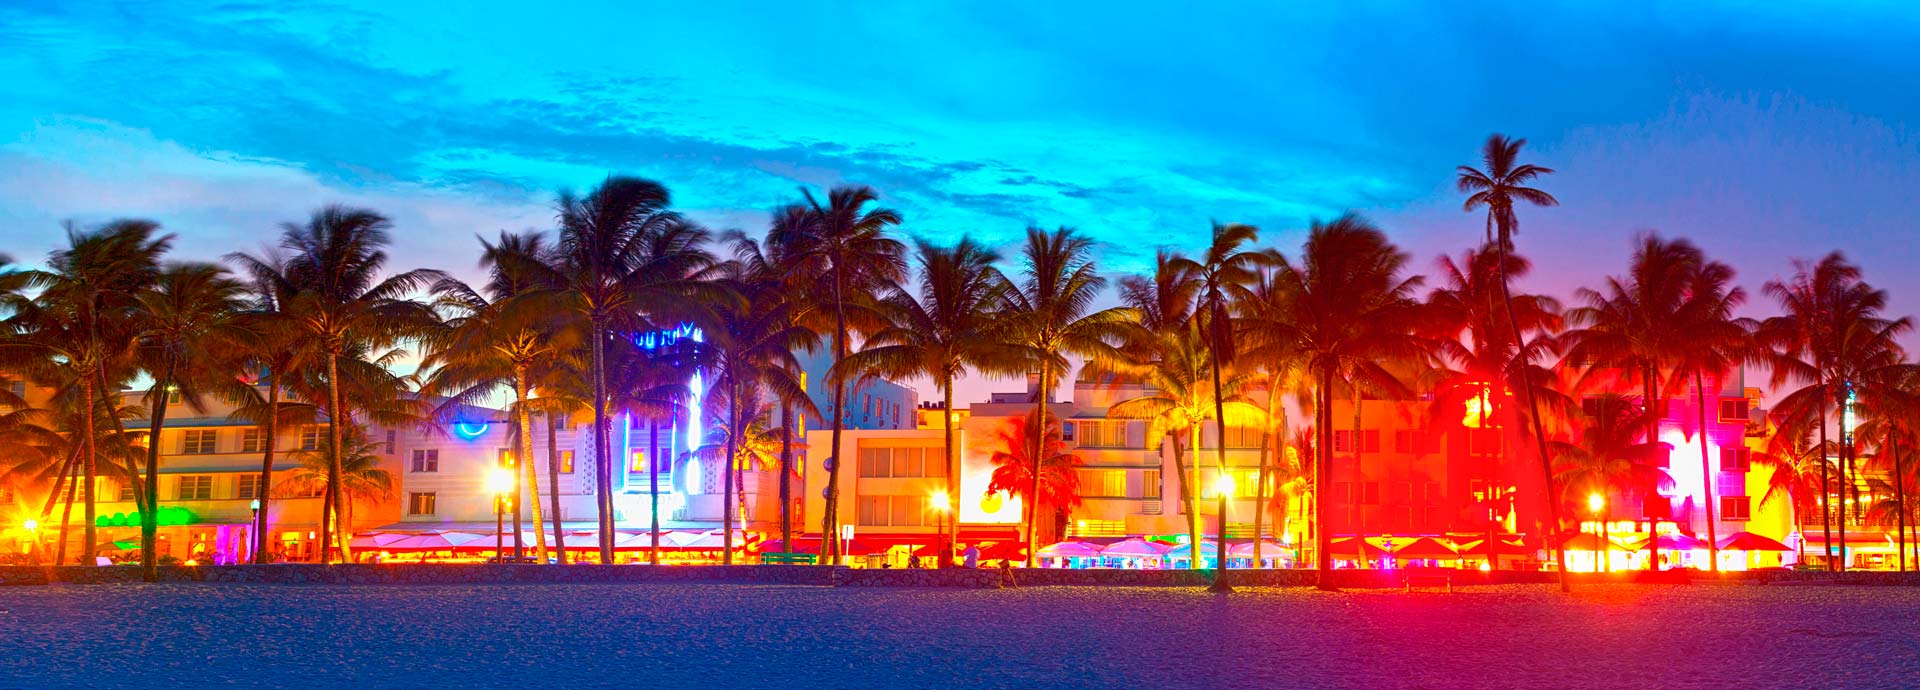 Alquiler de carros en Miami